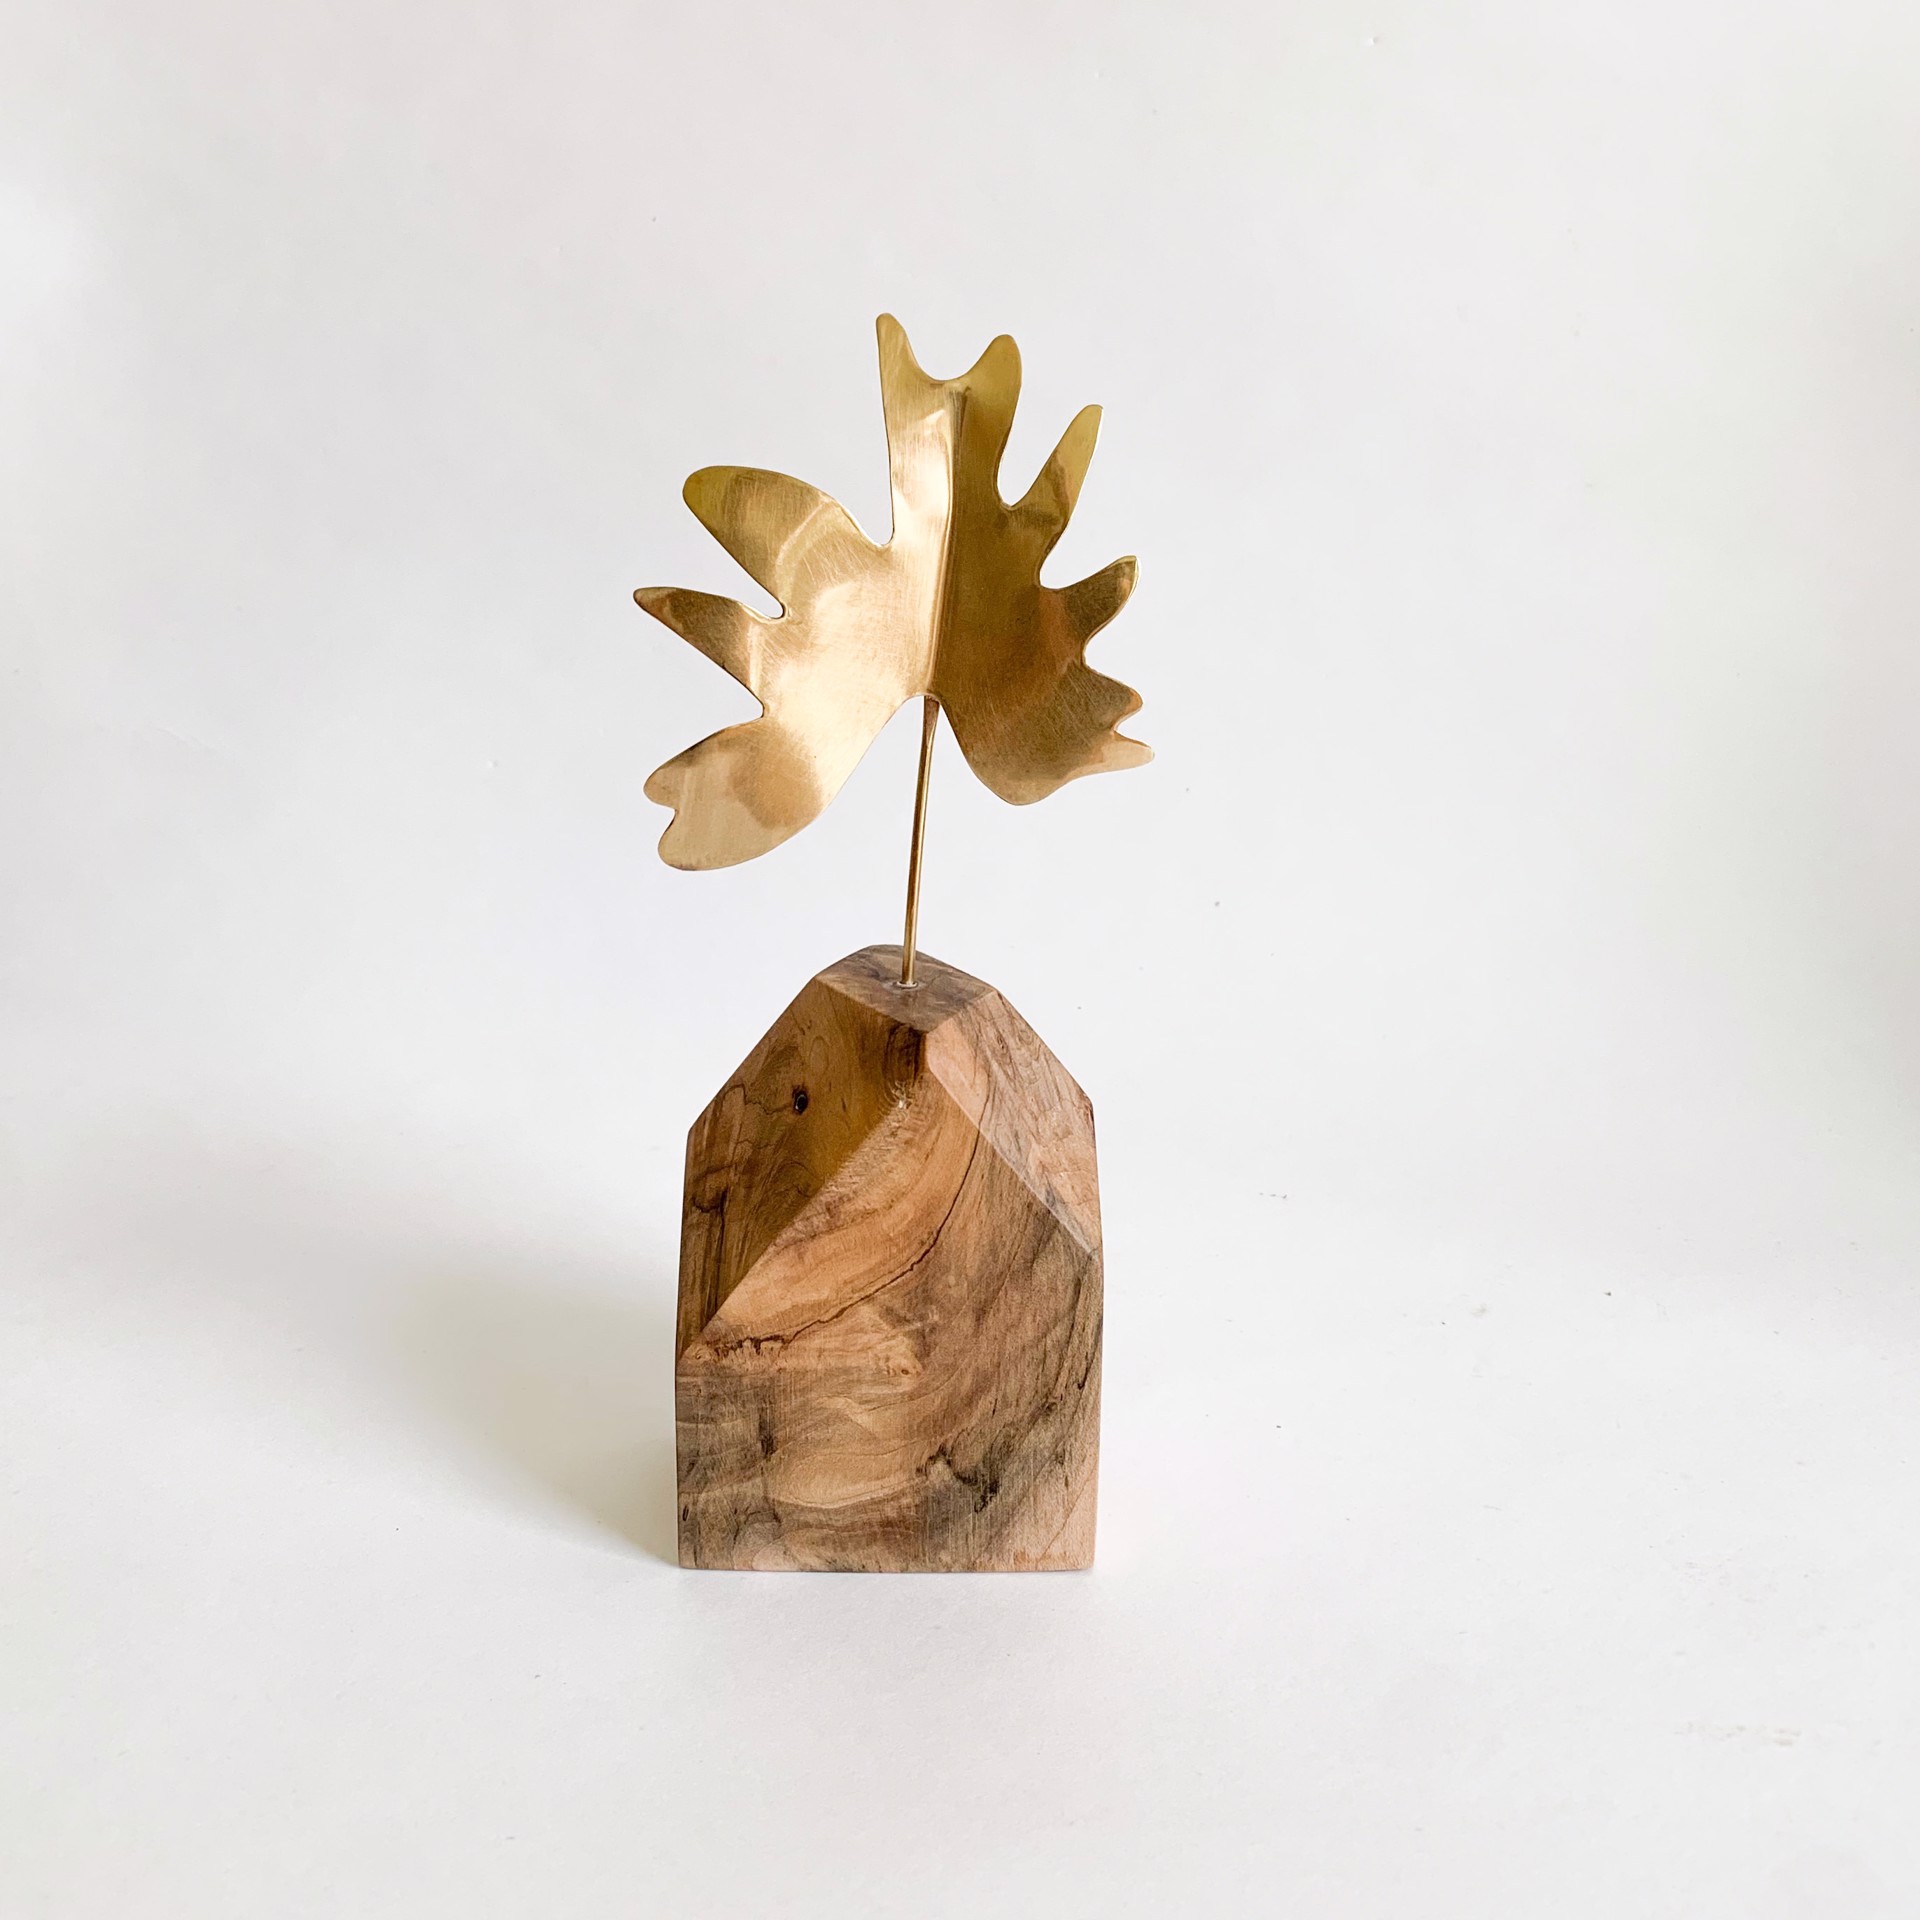 Selloum Small Sculpture by Audrey Laine